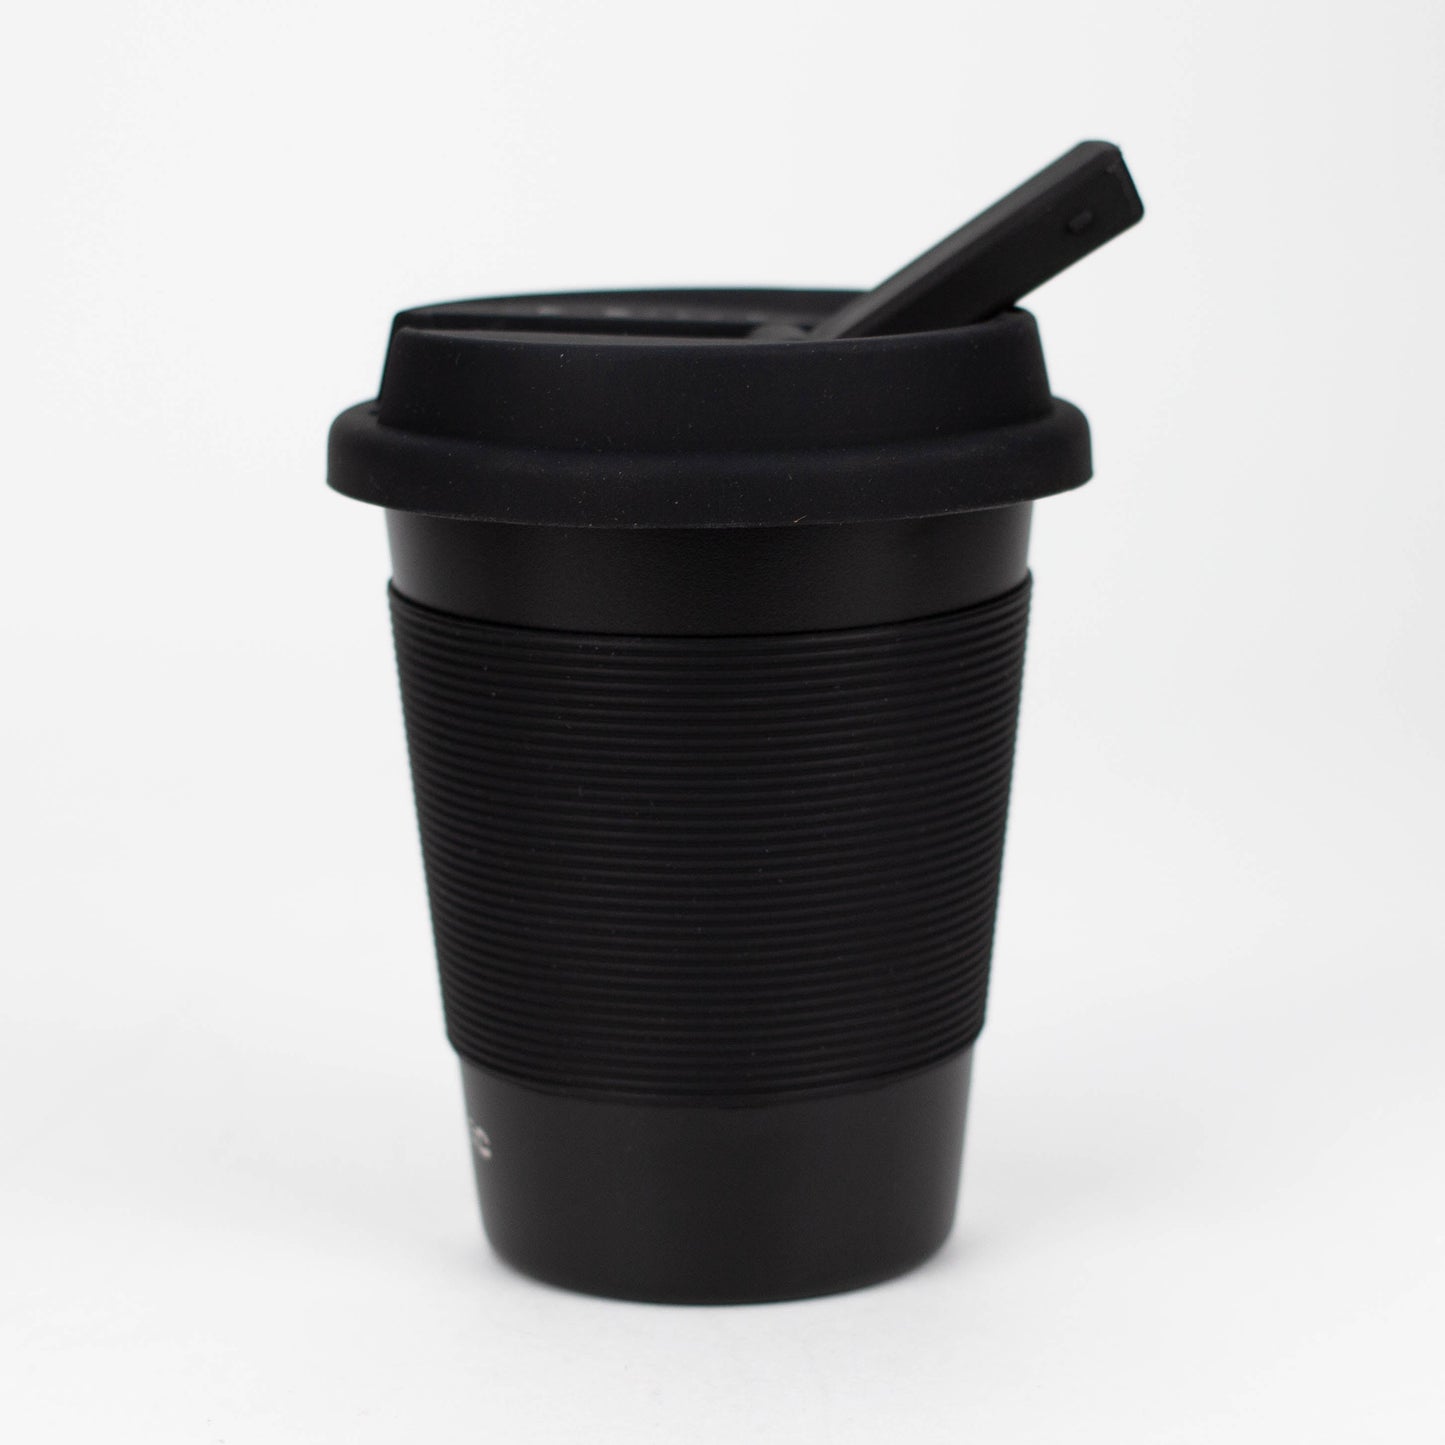 OPSEC Mug | Stealth Bubbler Bundle w/ Grinder and Extra Ceramic Bowl_14